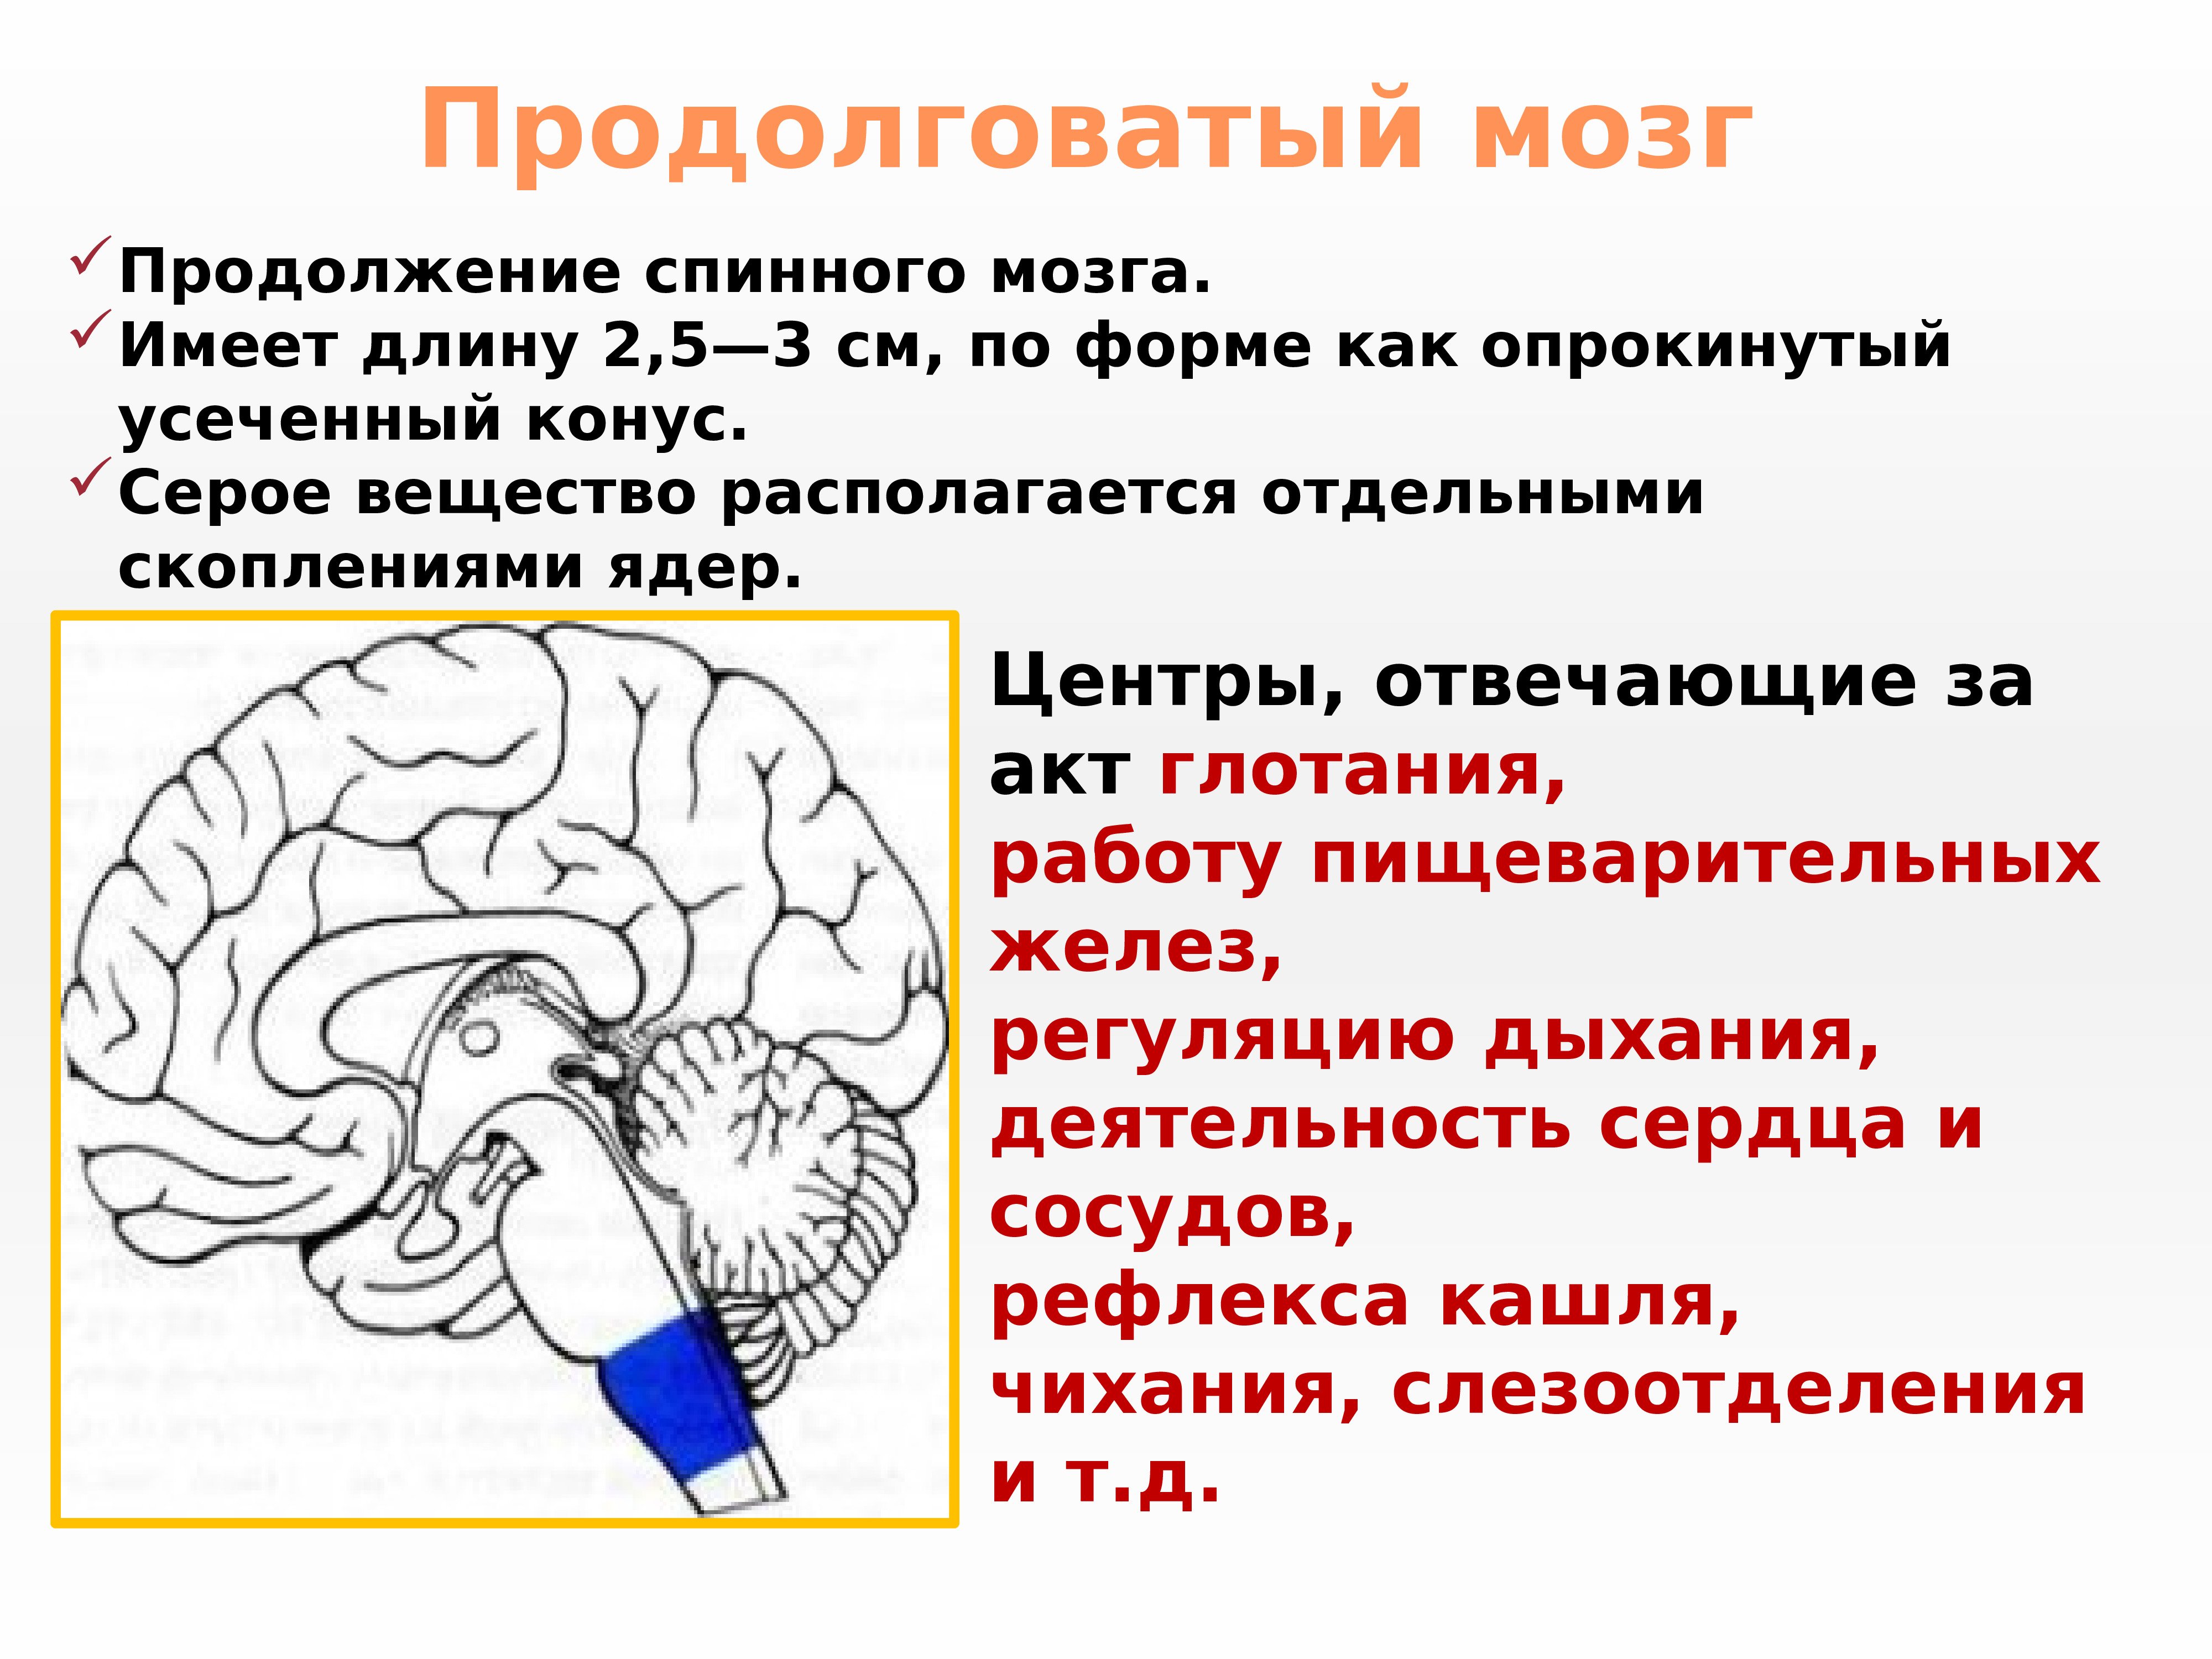 Мозг расположение и функции. Продолговатый мозг строение и функции. Функции продолговатого мозга мозга. Функции центров продолговатого мозга. Продолговатый мозг расположение и функции.